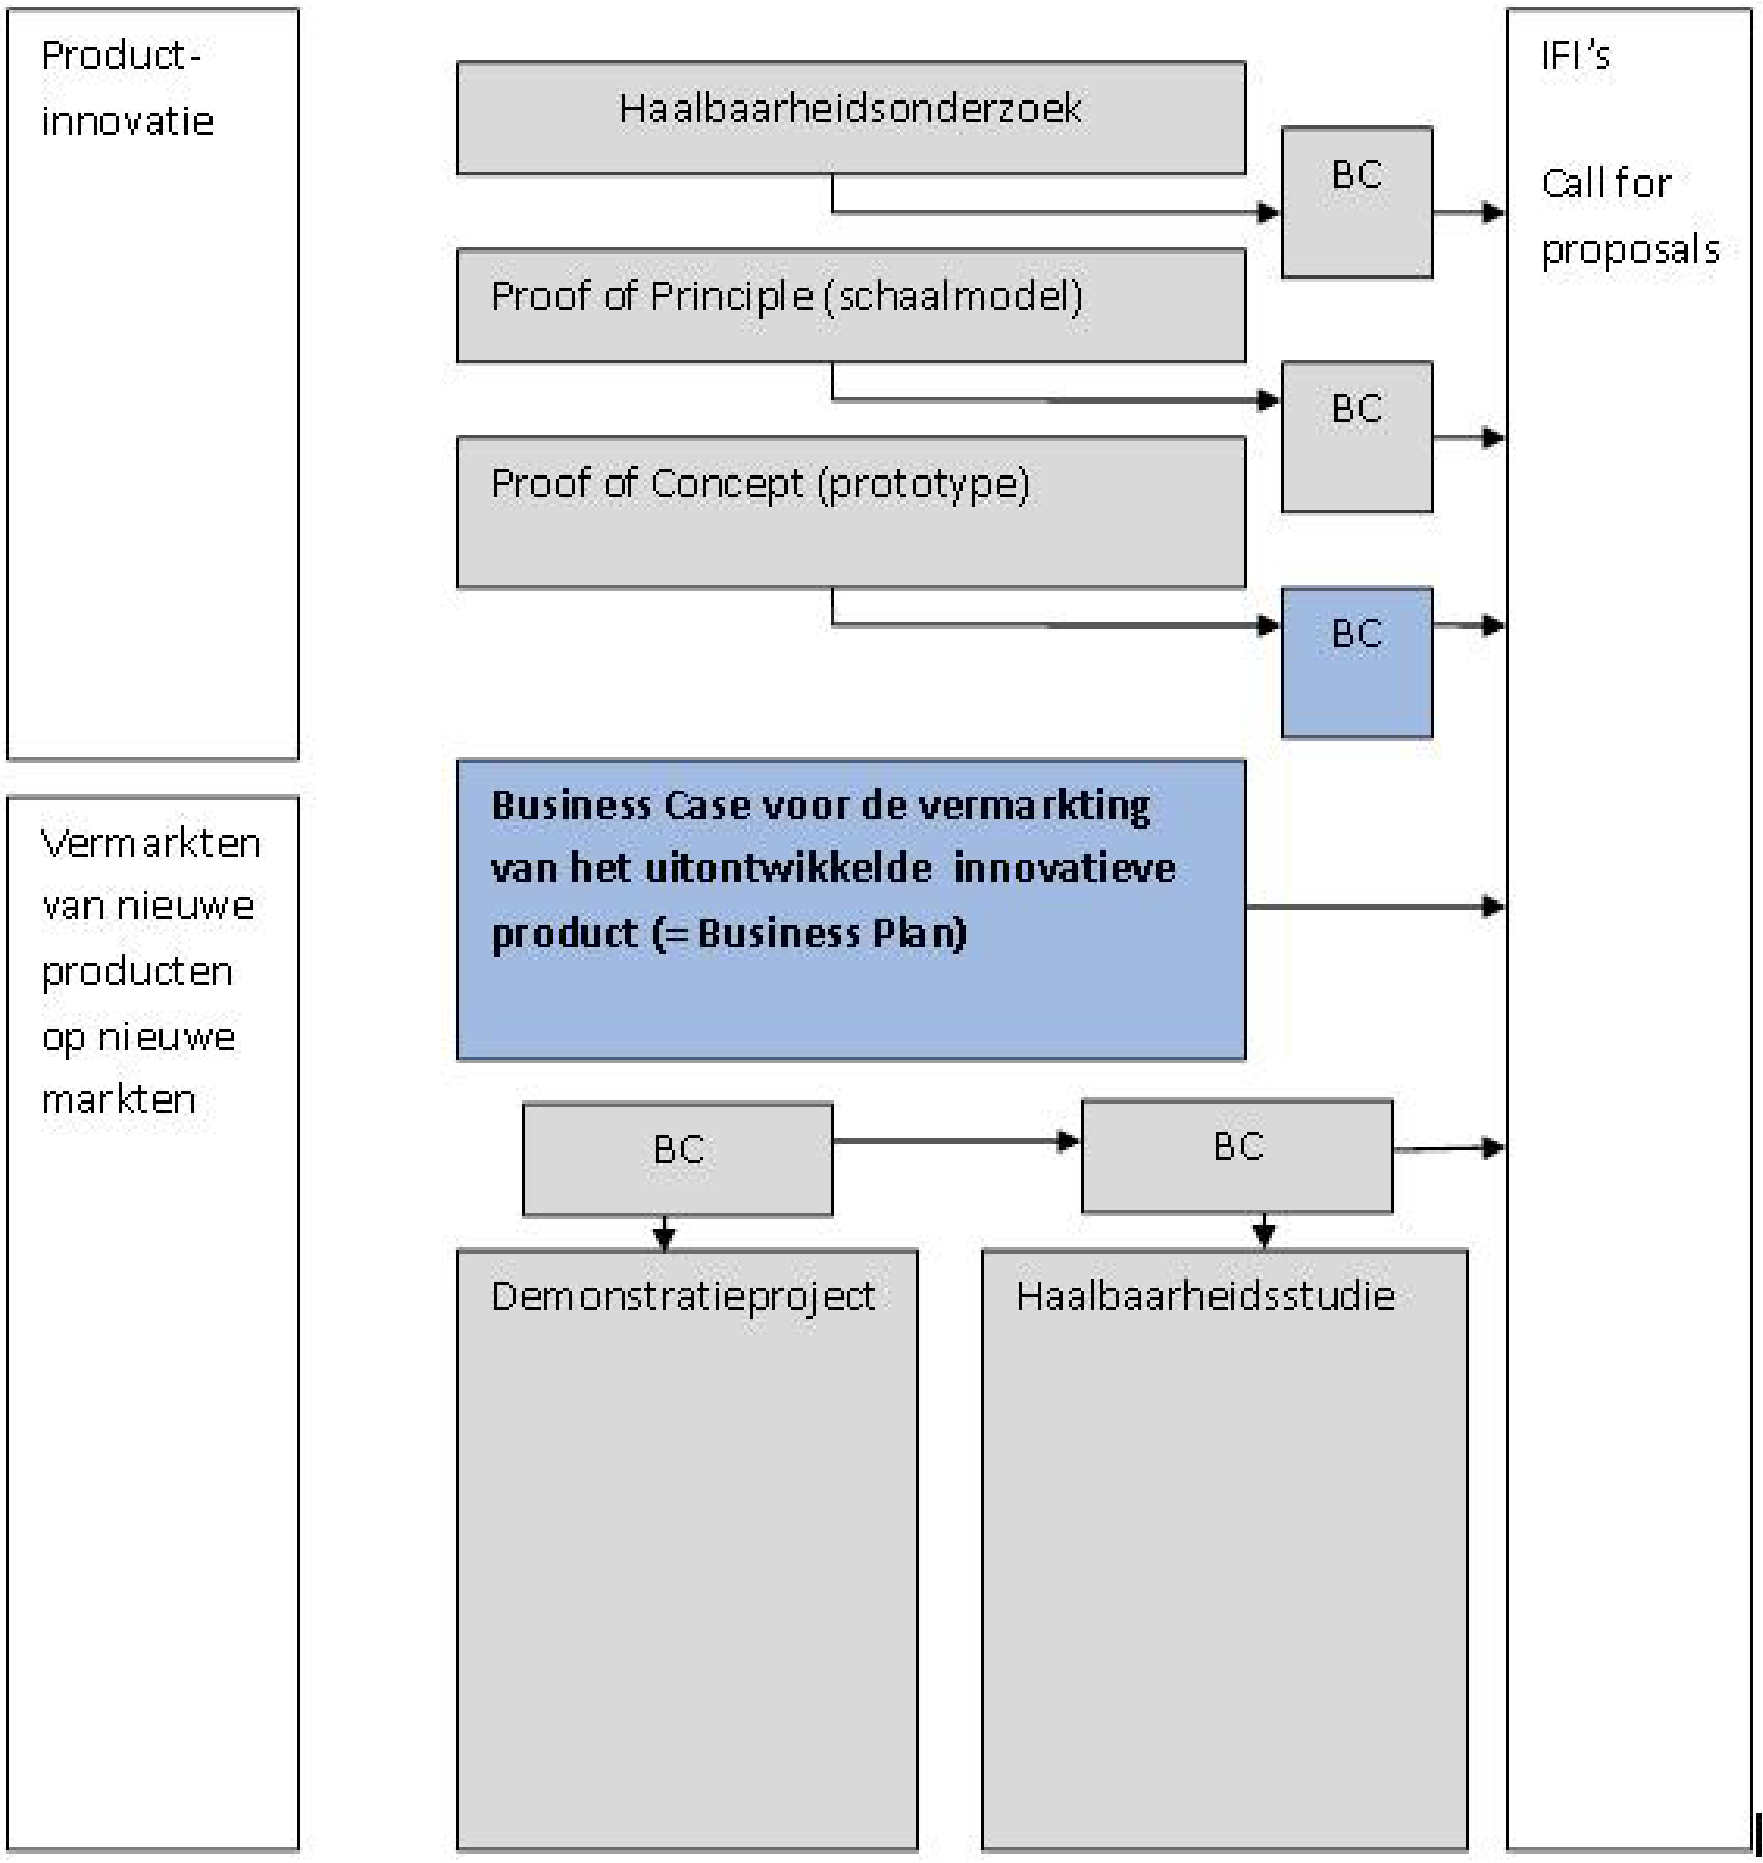 Figuur 1: schematische weergave van de mogelijke projecten binnen het Fonds LS&H4D, hetgeen onder de subsidiabele projecten valt is grijs en blauwgekleurd weergegeven.